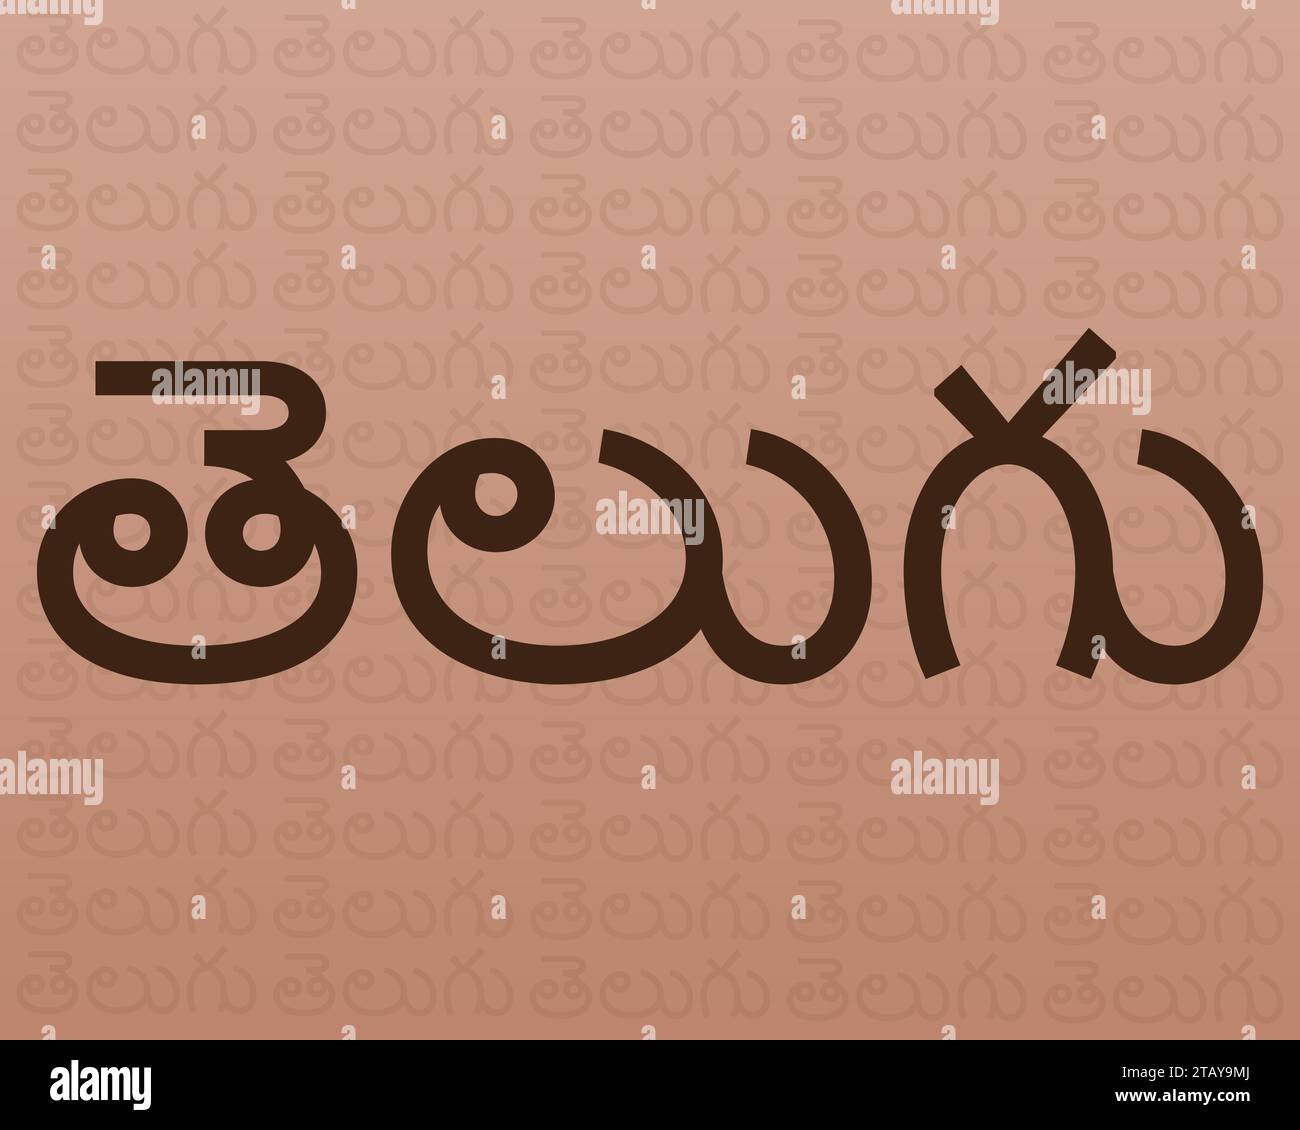 Telugu language immagini e fotografie stock ad alta risoluzione - Alamy